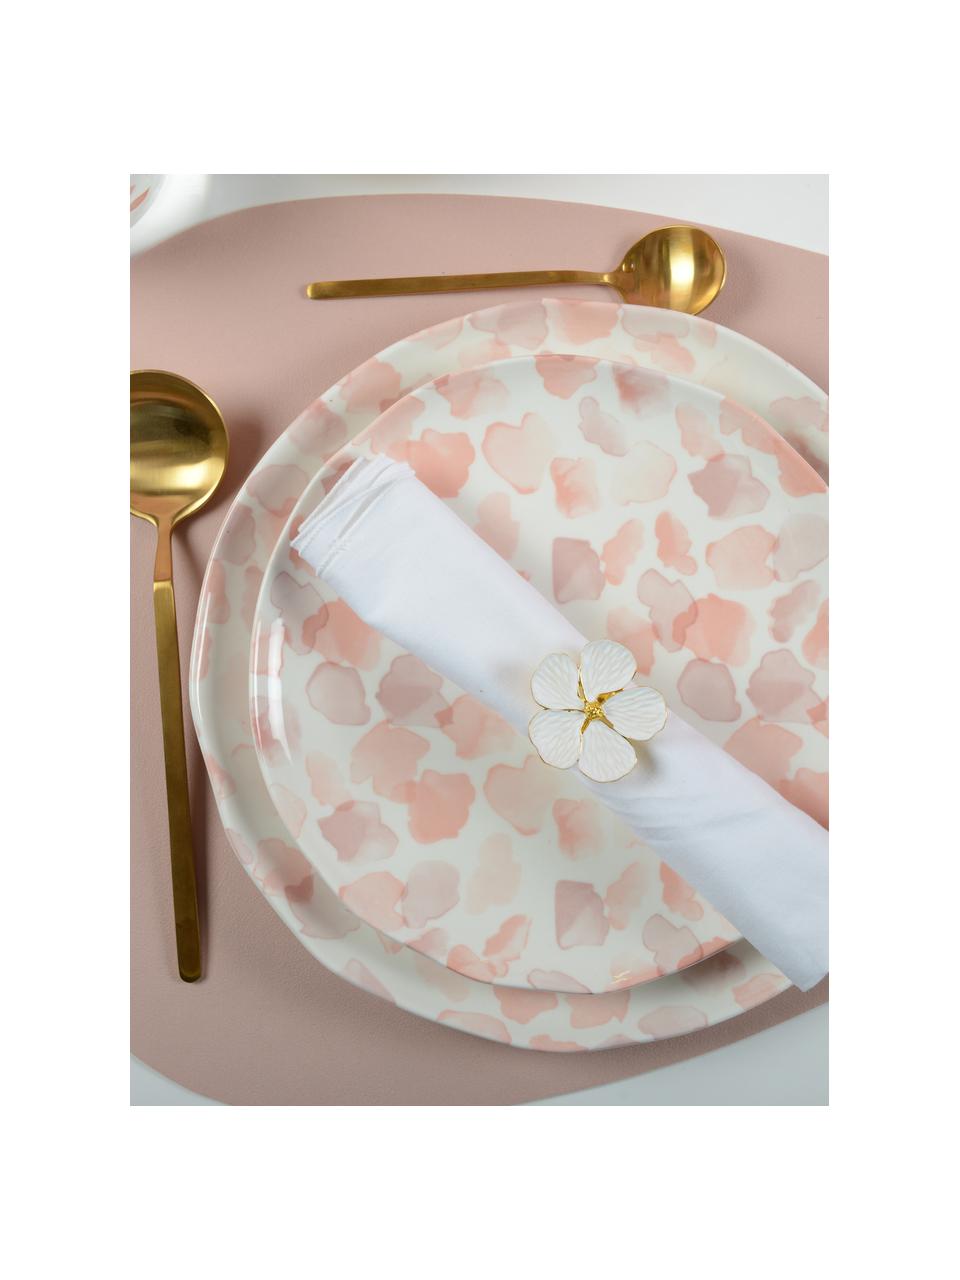 Rond de serviette de table Fleur, 4 pièces, Métal, Couleur dorée, blanc, Ø 4 cm